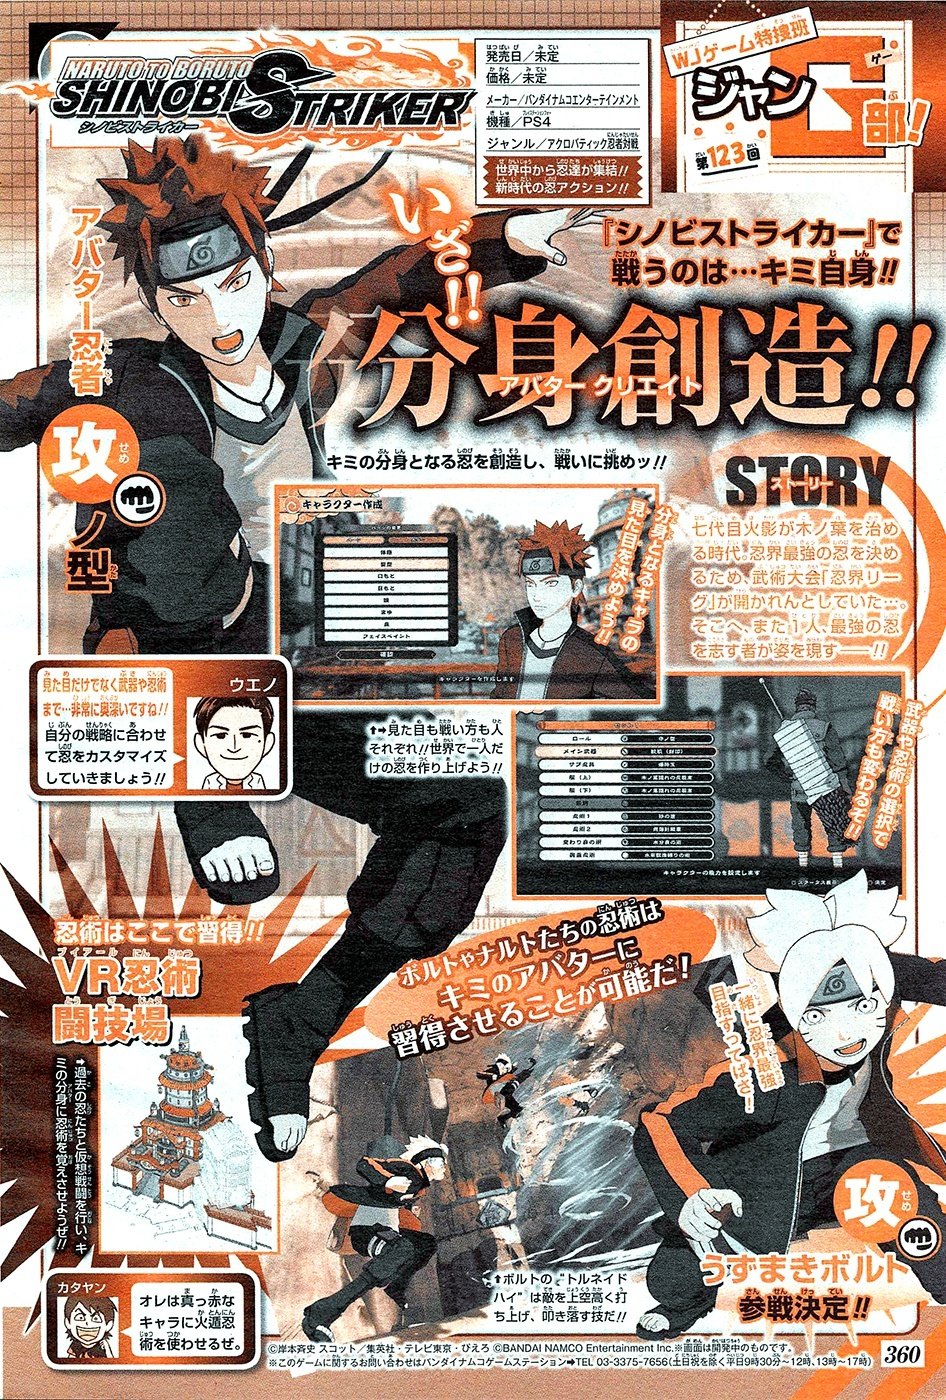 Naruto-to-Boruto-Shinobi-Striker_03-08-2017_scan